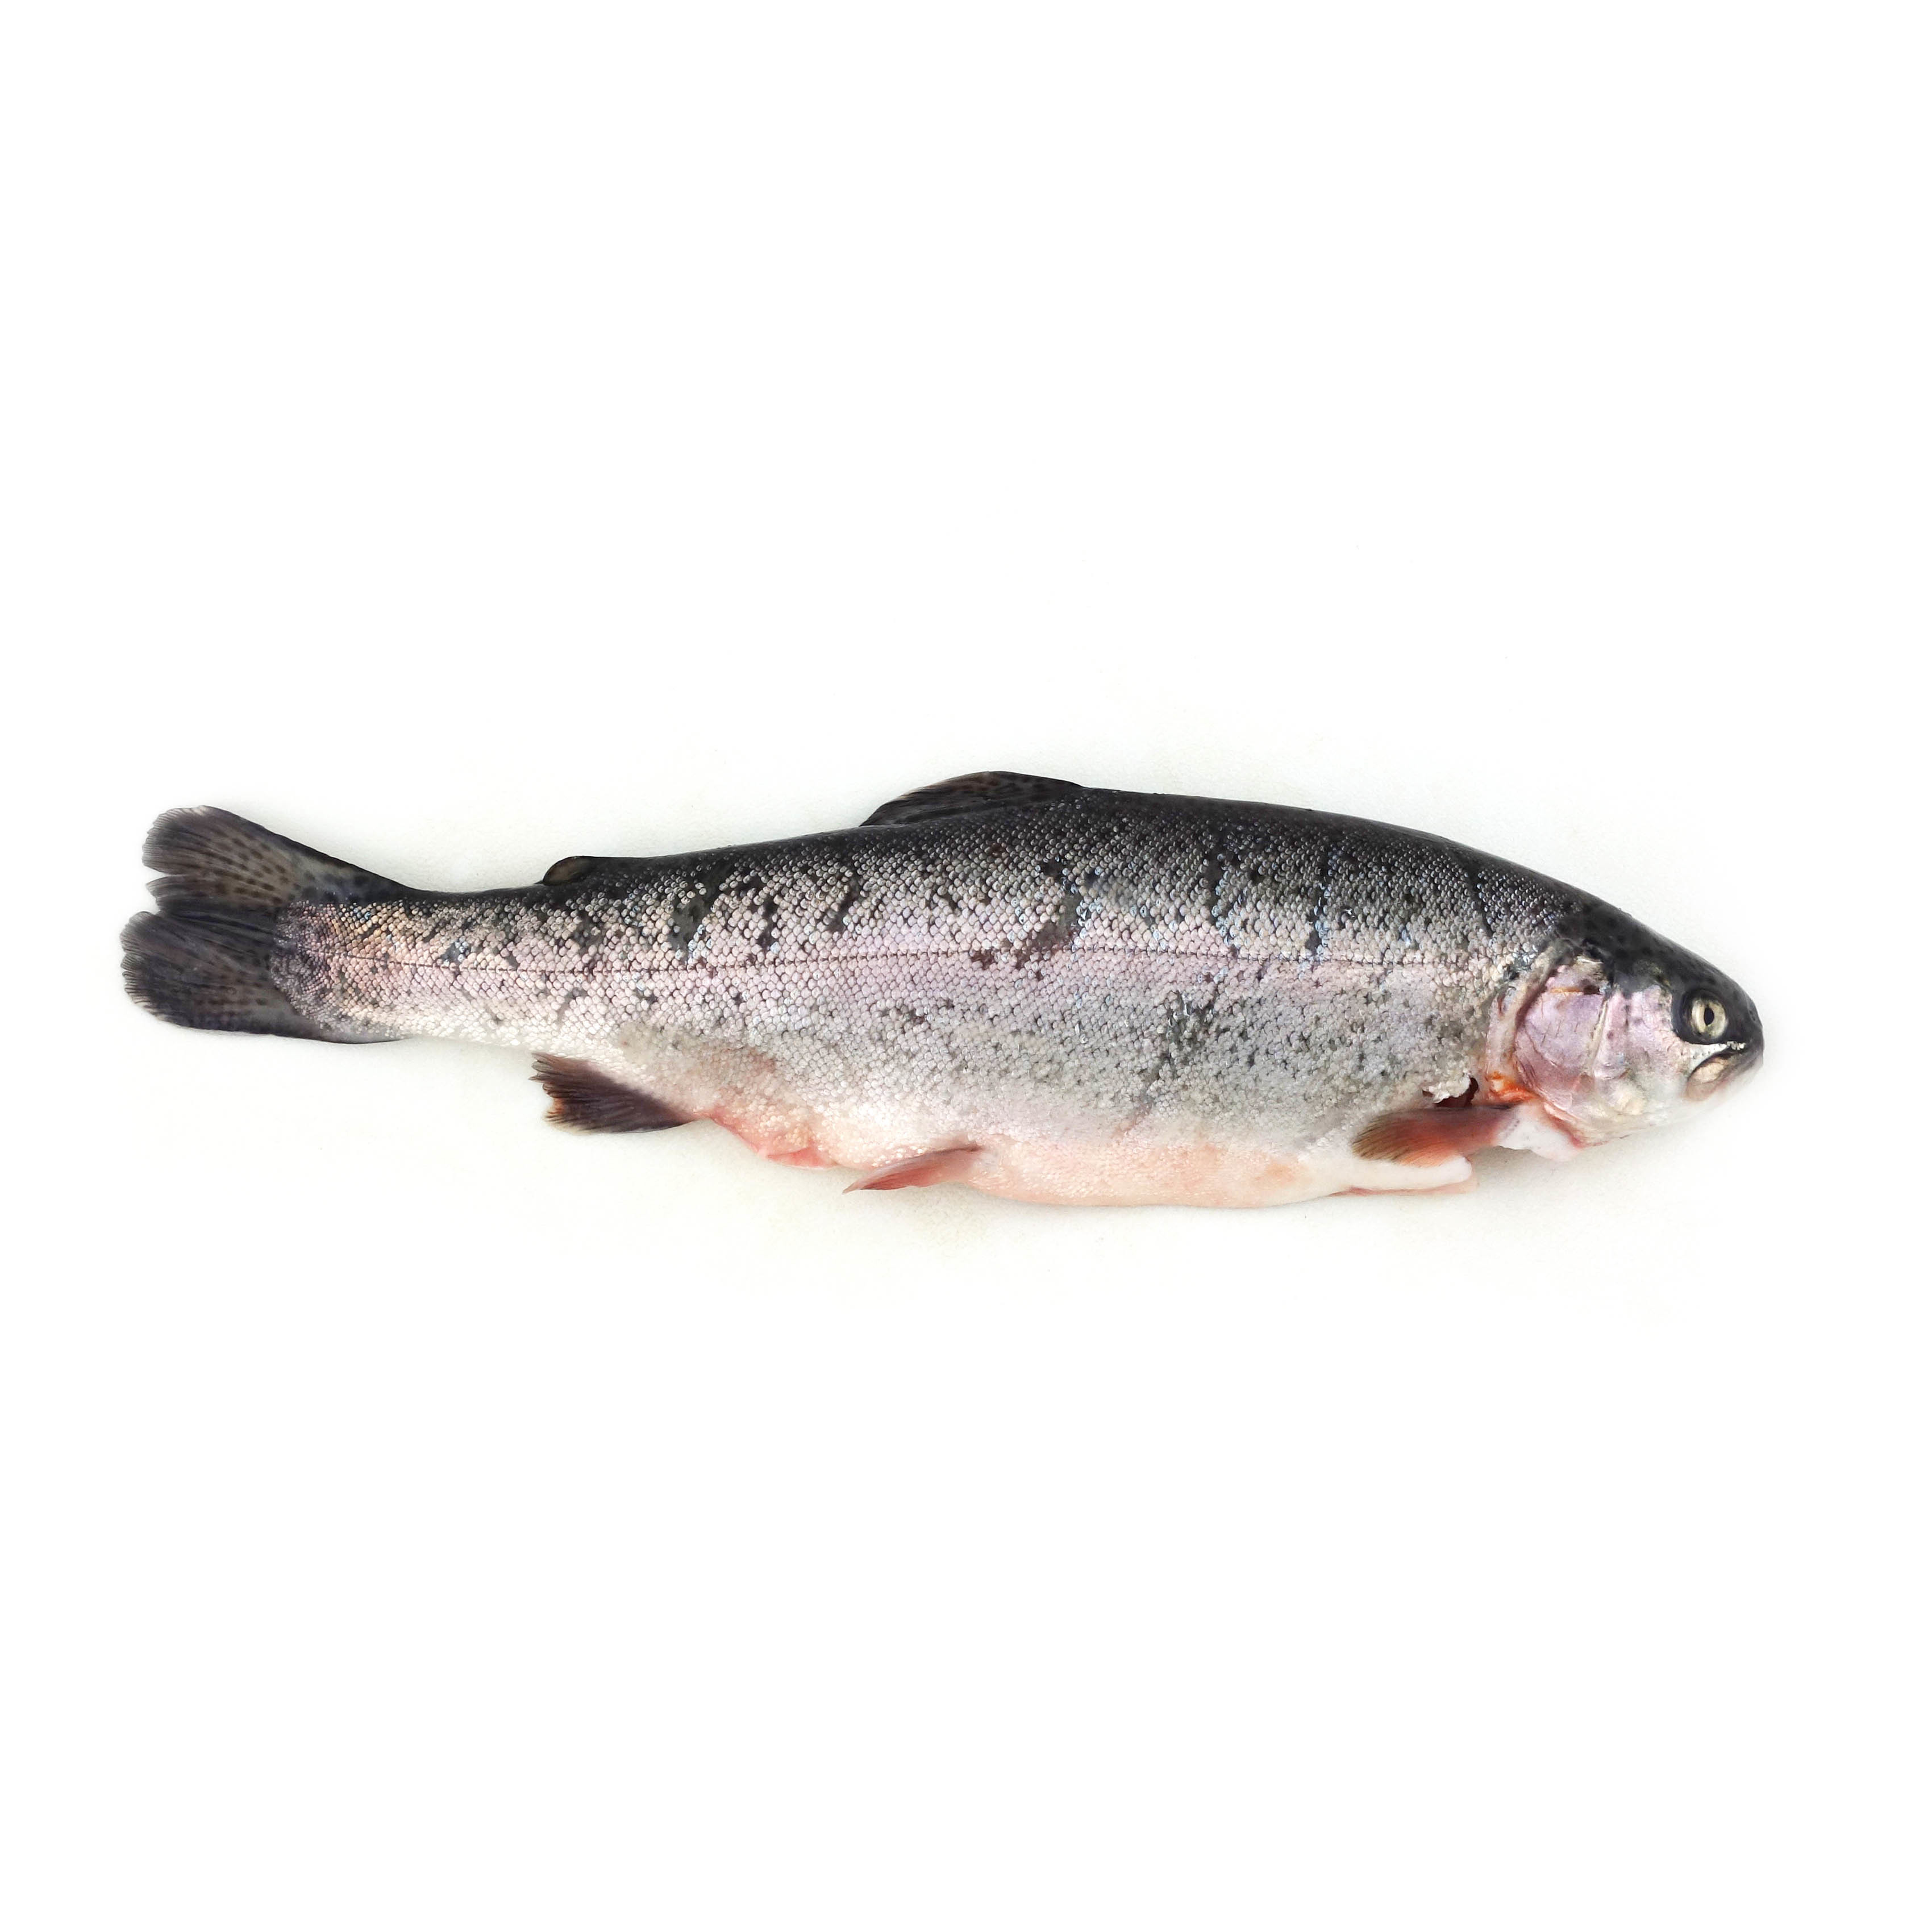 急凍法國野生原條粉紅河鱒魚(Pink River Trout)- 已去鰓及內臟